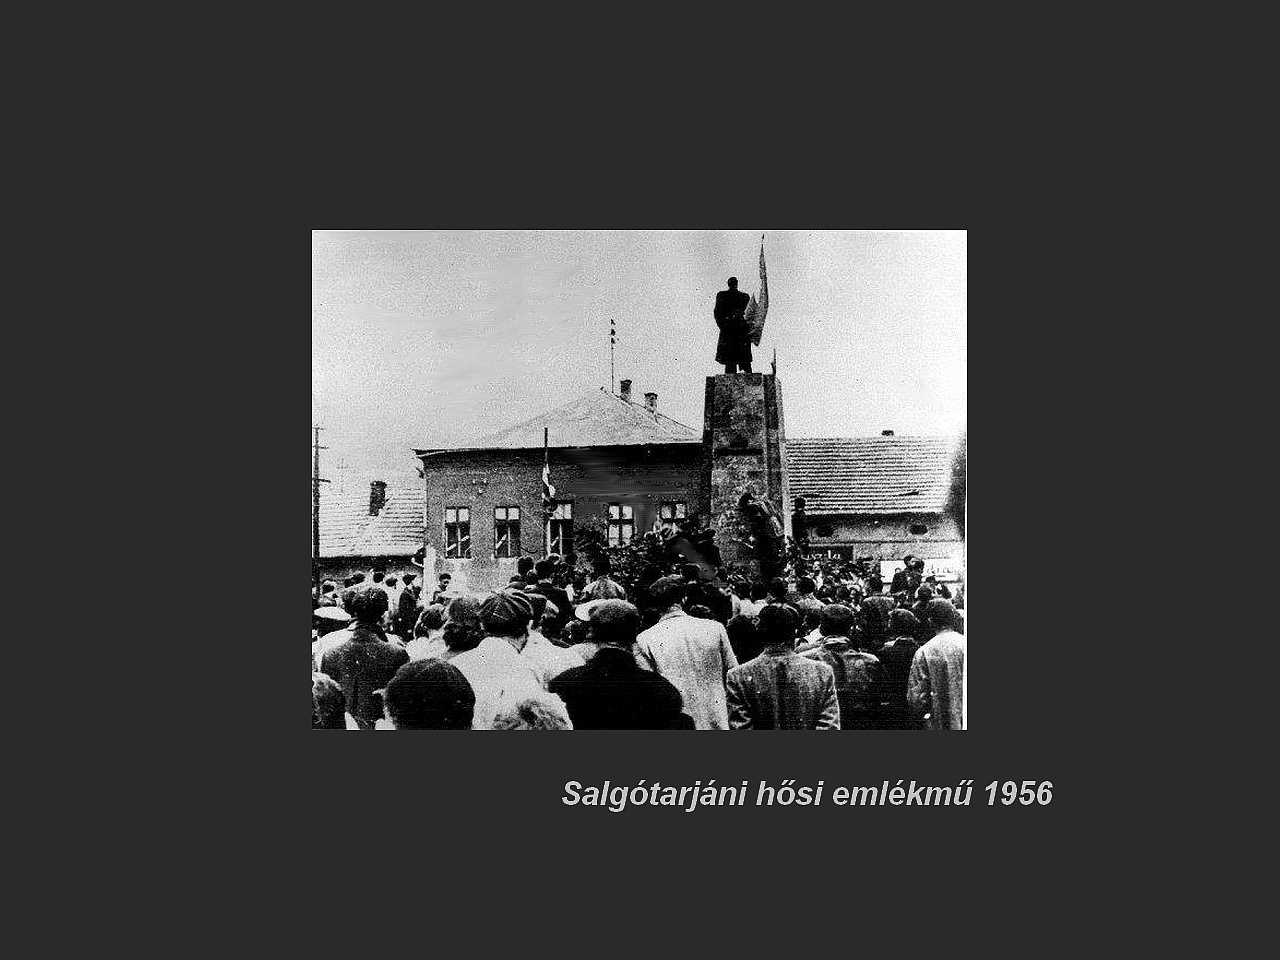 Salgótarján régen, hősi emlékmű döntése1956